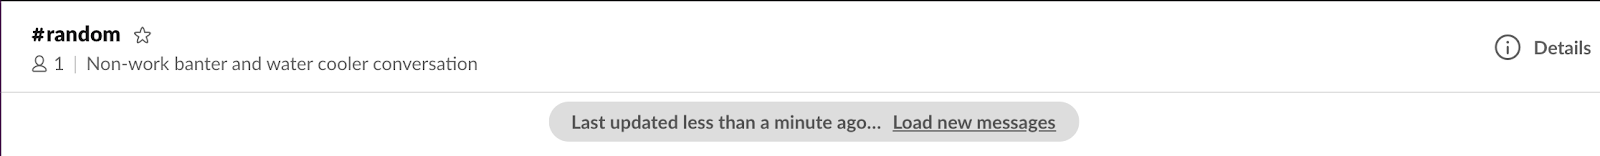 一个 Slack 频道，其中显示了一条消息：“上次更新时间不到一分钟⋯⋯加载新消息”